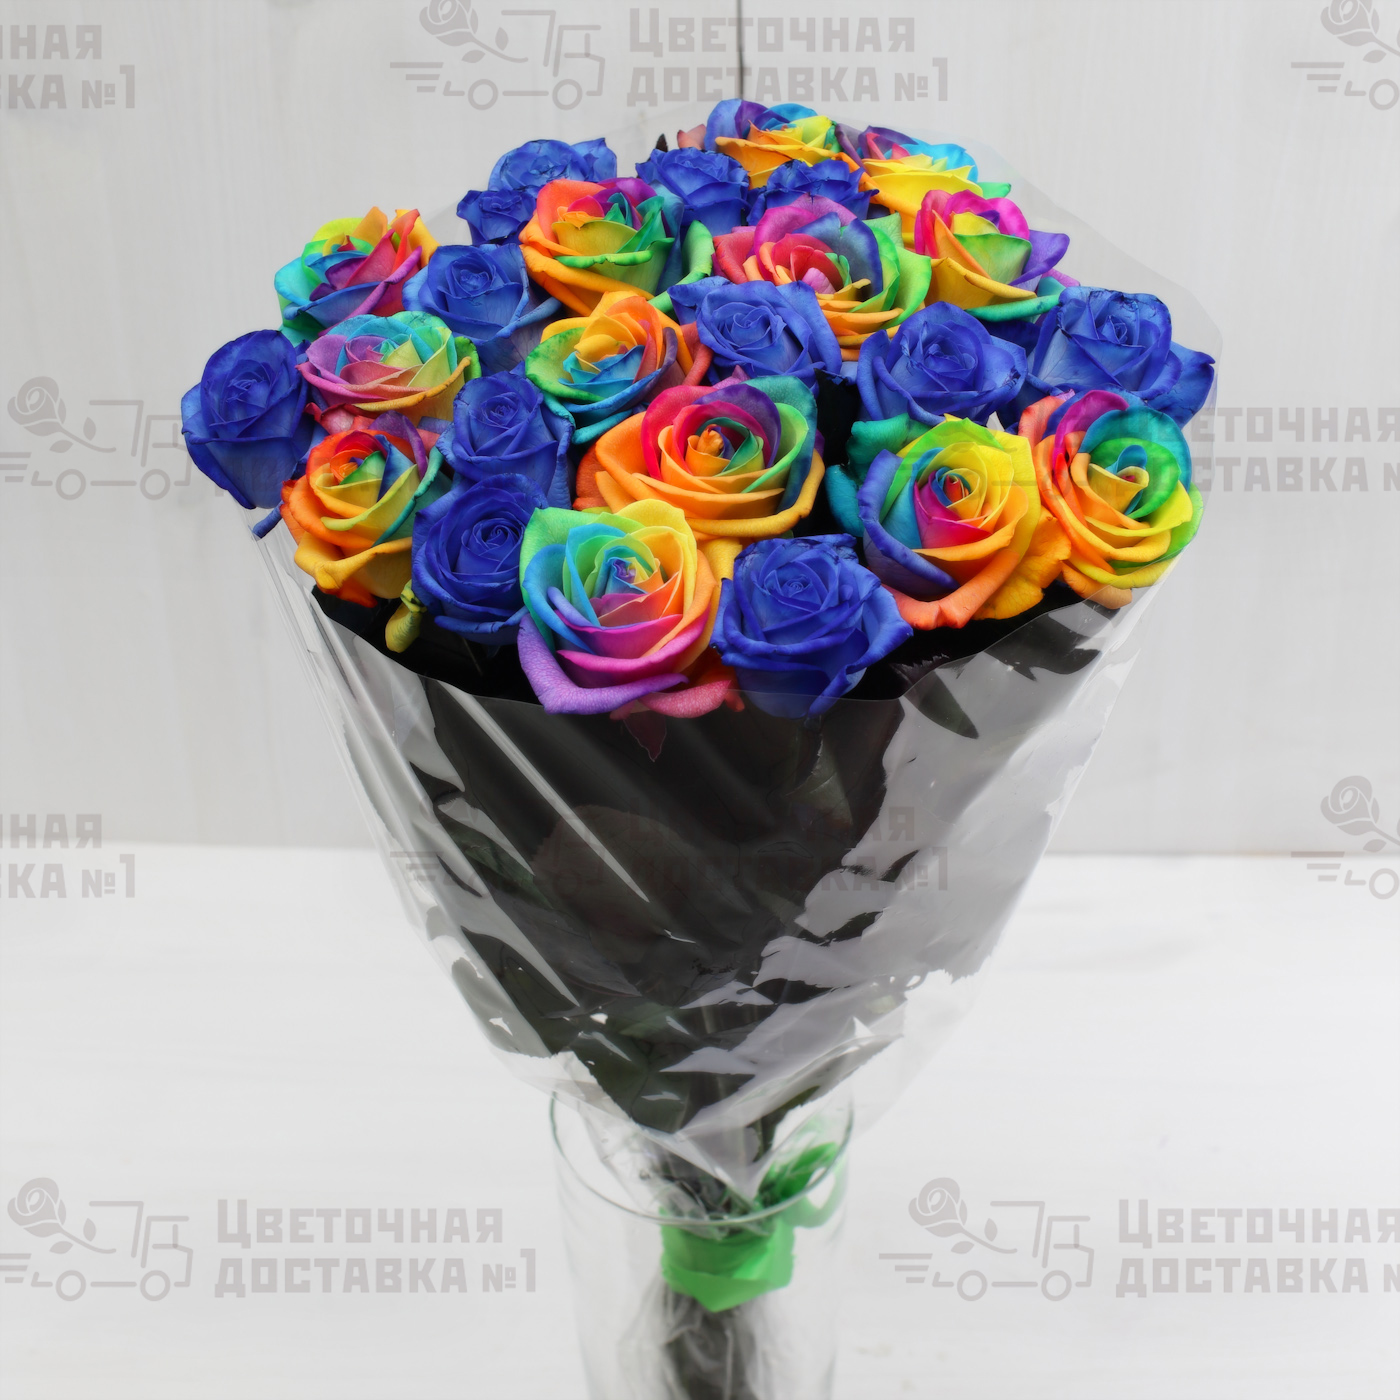 Синие и радужные розы в букете СПб